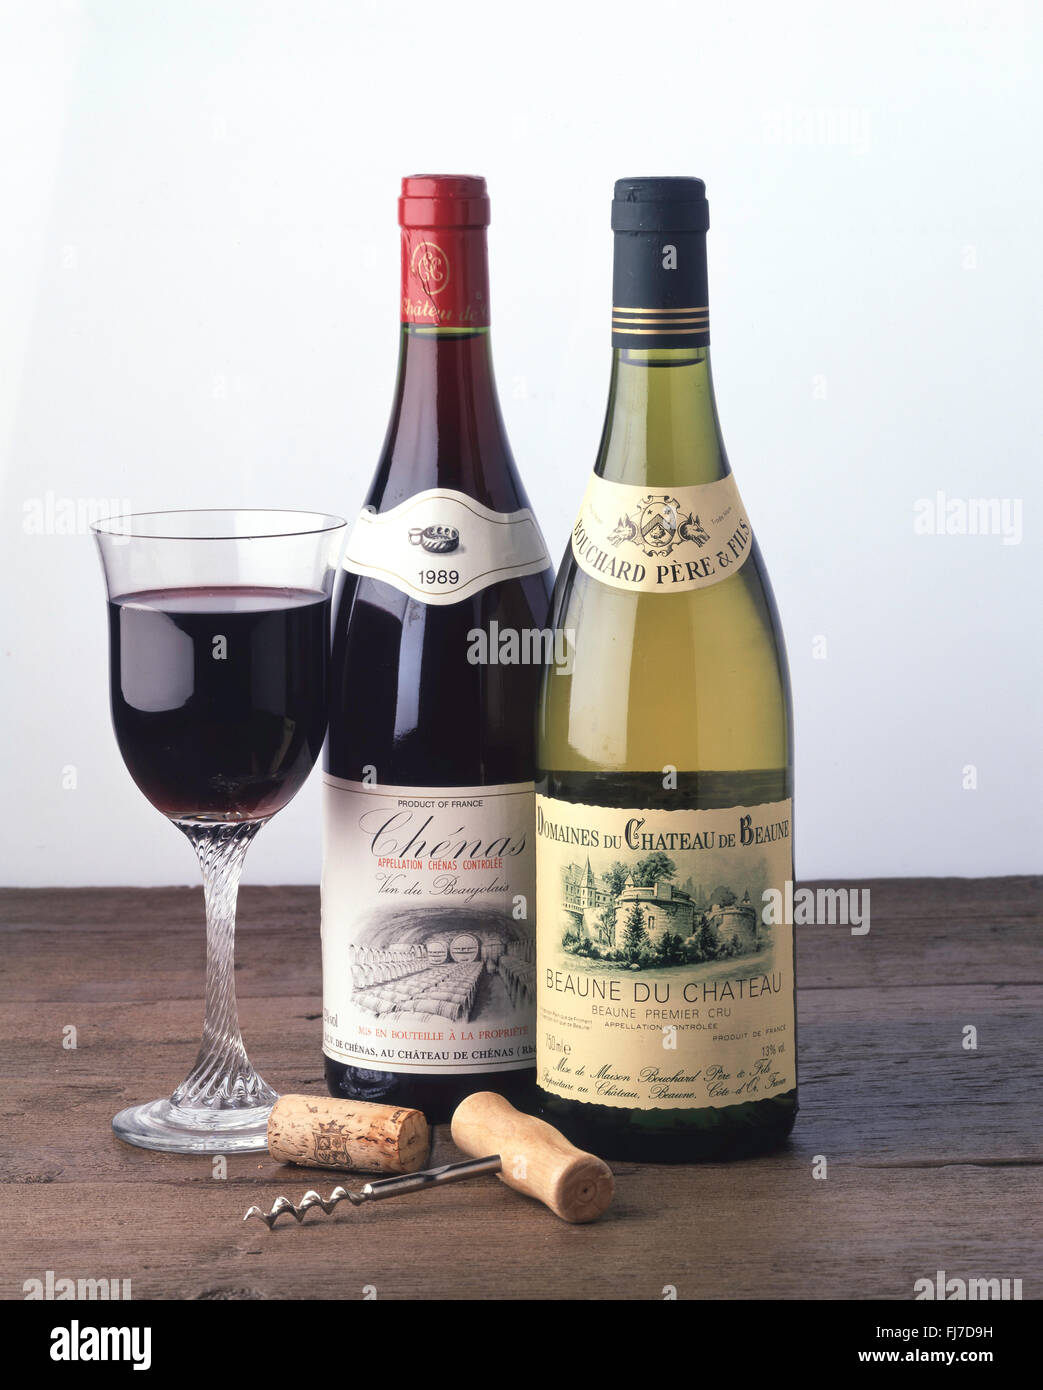 Bottiglia di Beaune du Chateau 1988 e Chenas 1989 il vino francese in studio di impostazione. Foto Stock